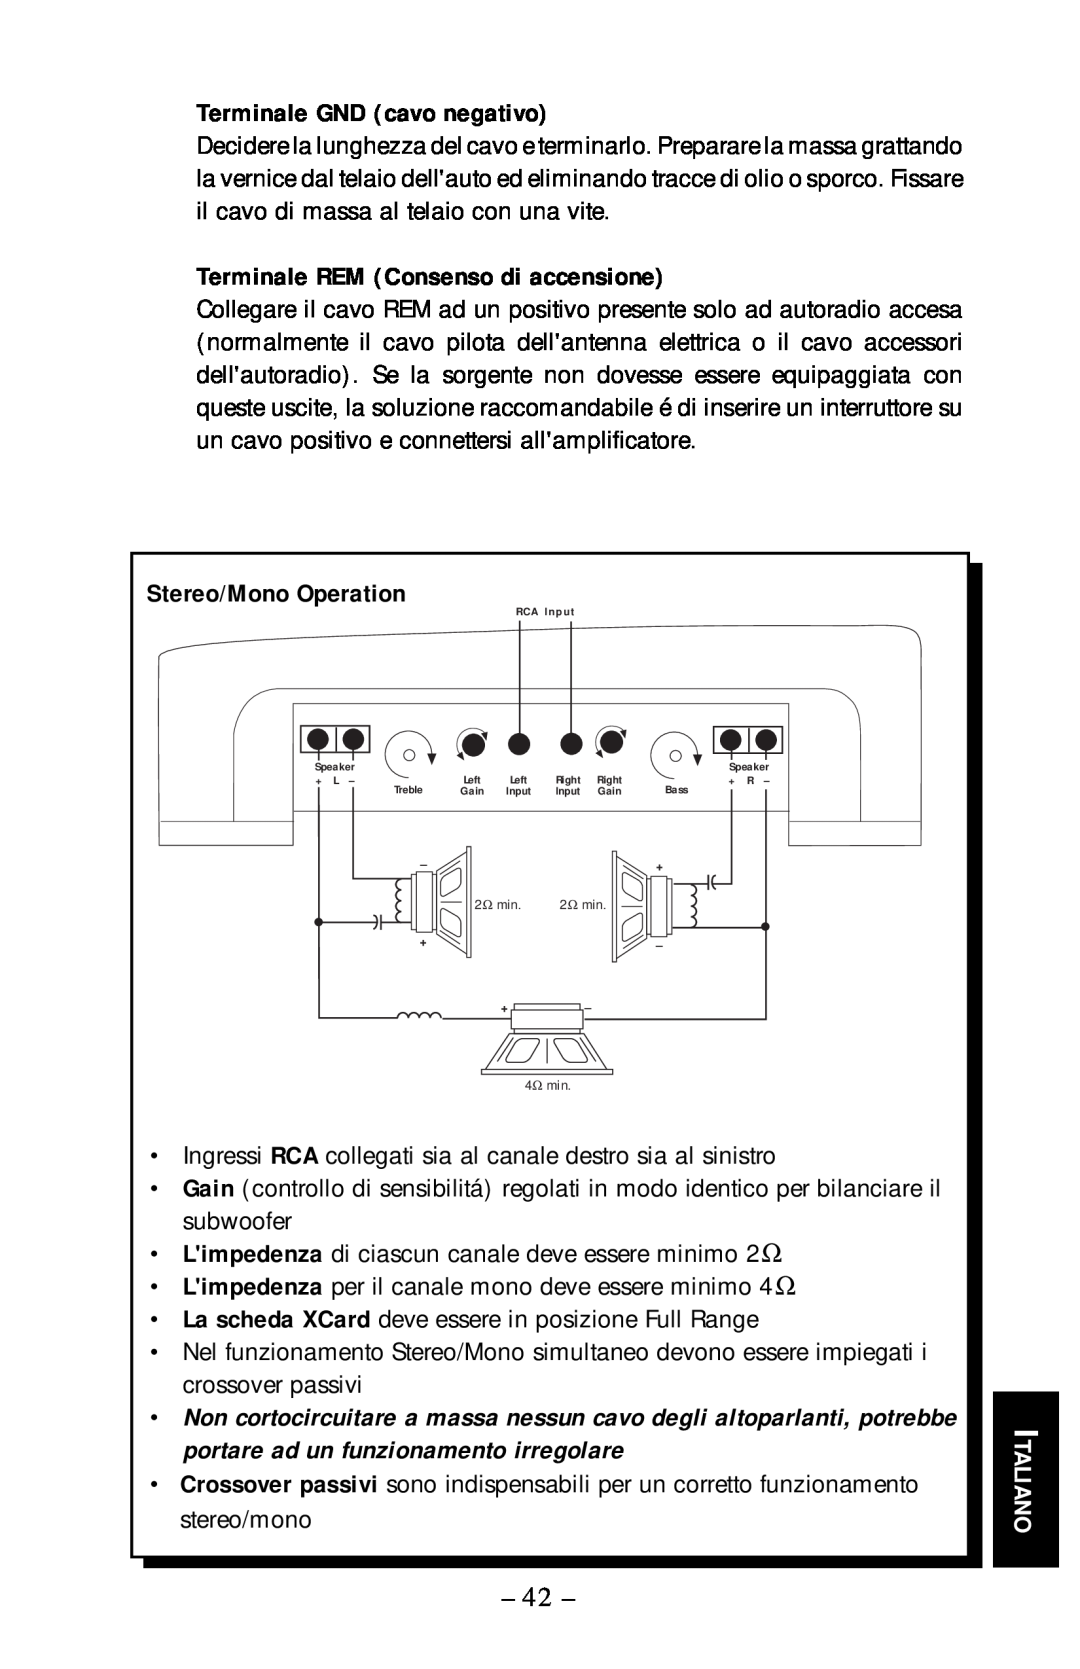 Rockford Fosgate 55.2 Terminale GND cavo negativo, Terminale REM Consenso di accensione, Italiano, Stereo/Mono Operation 